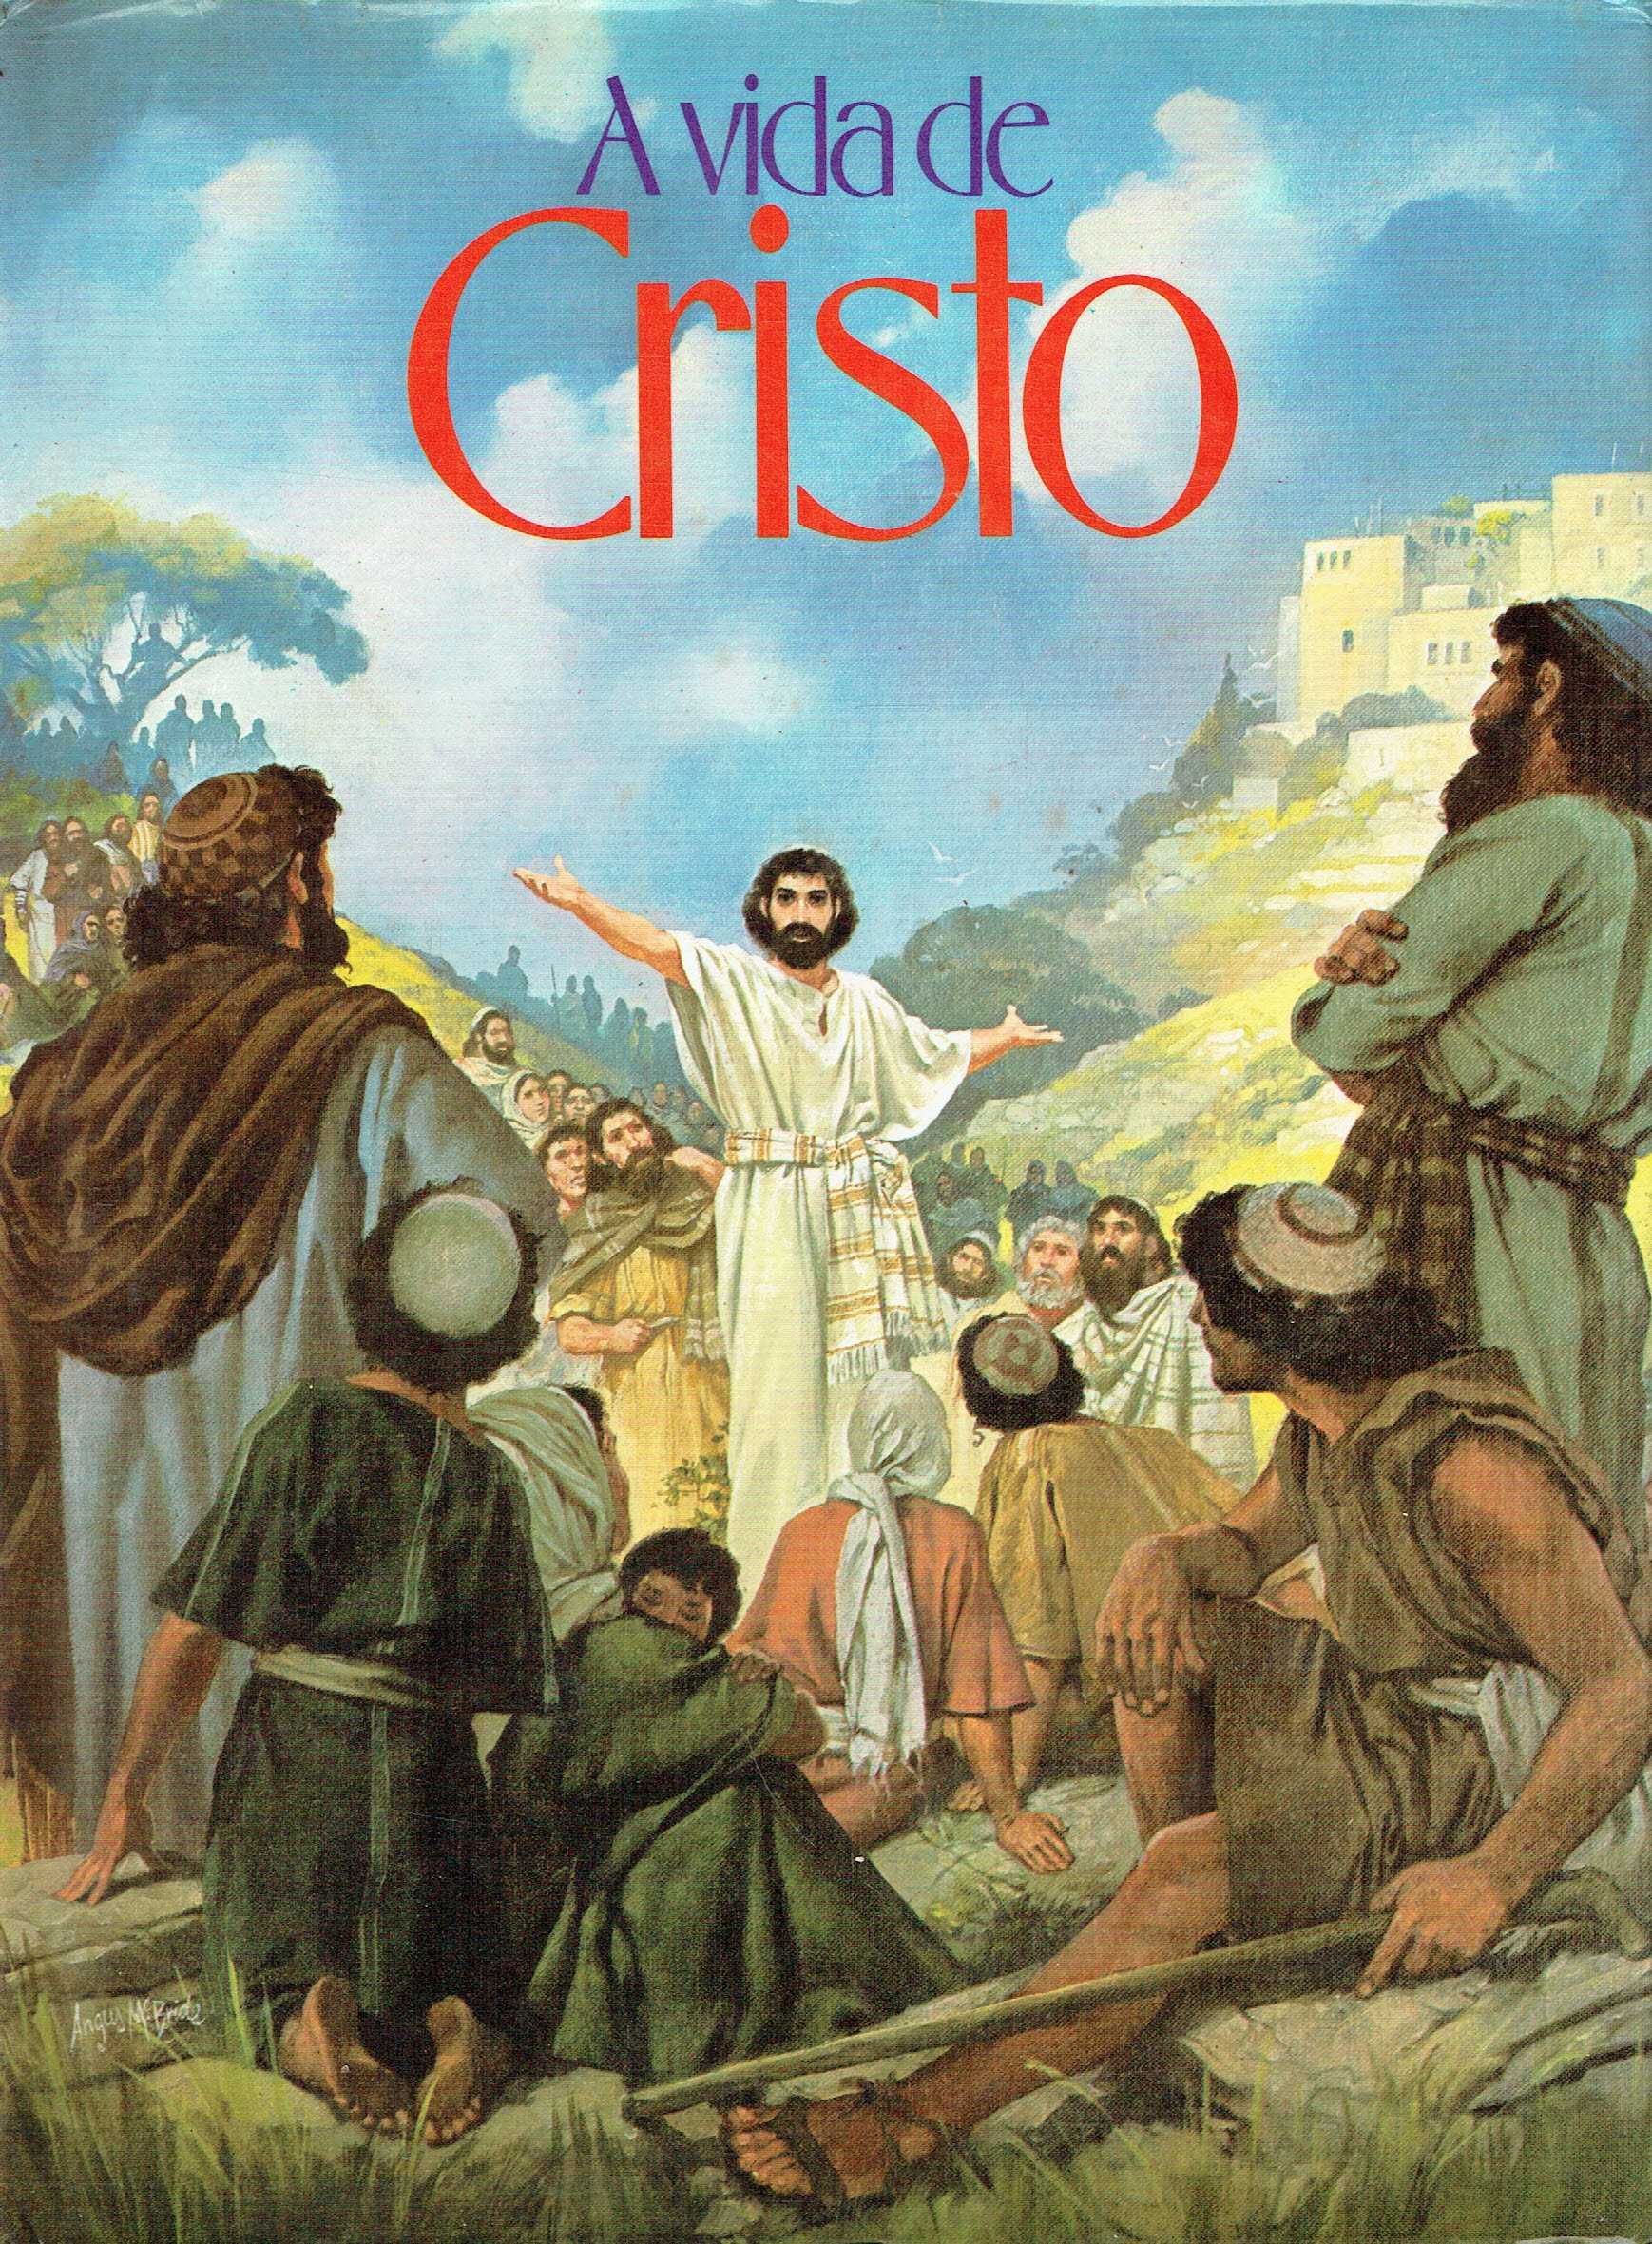 10160

A Vida de Cristo

ilustrações de Angus Mcbride